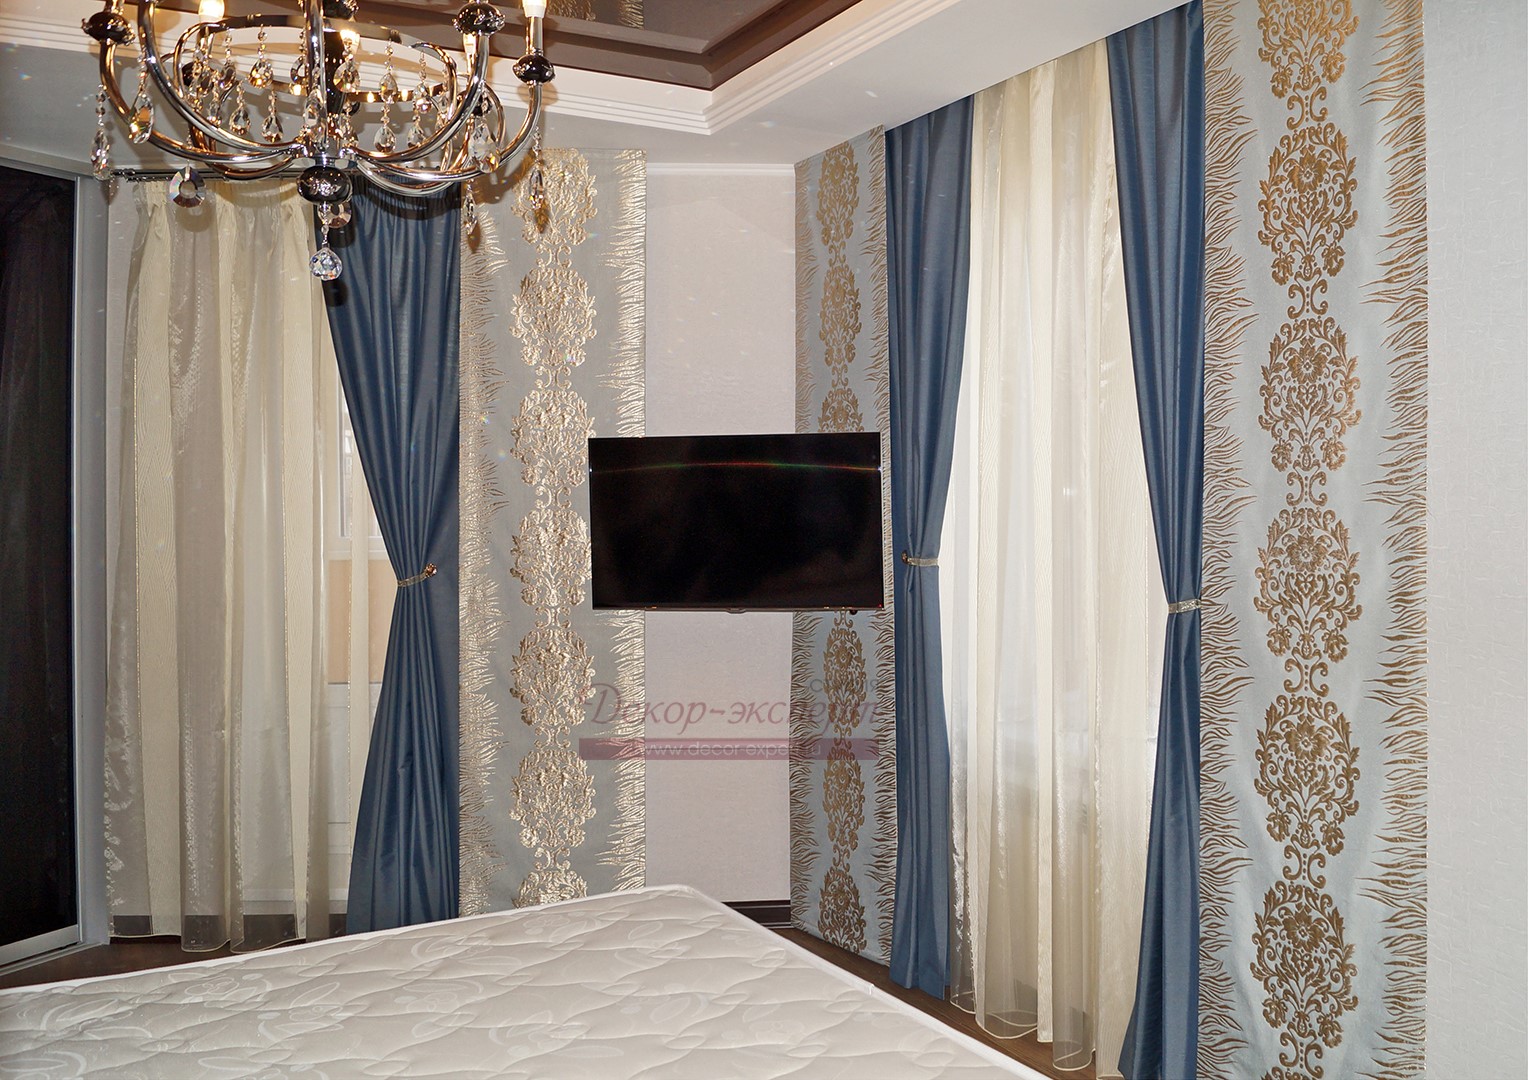 Вариант ассиметричной комбинации трёх японских штор и трёх портьер для двух окон в спальне. Золотистый цвет дамасков на панелях перекликается с рефлексами подвесок люстры.